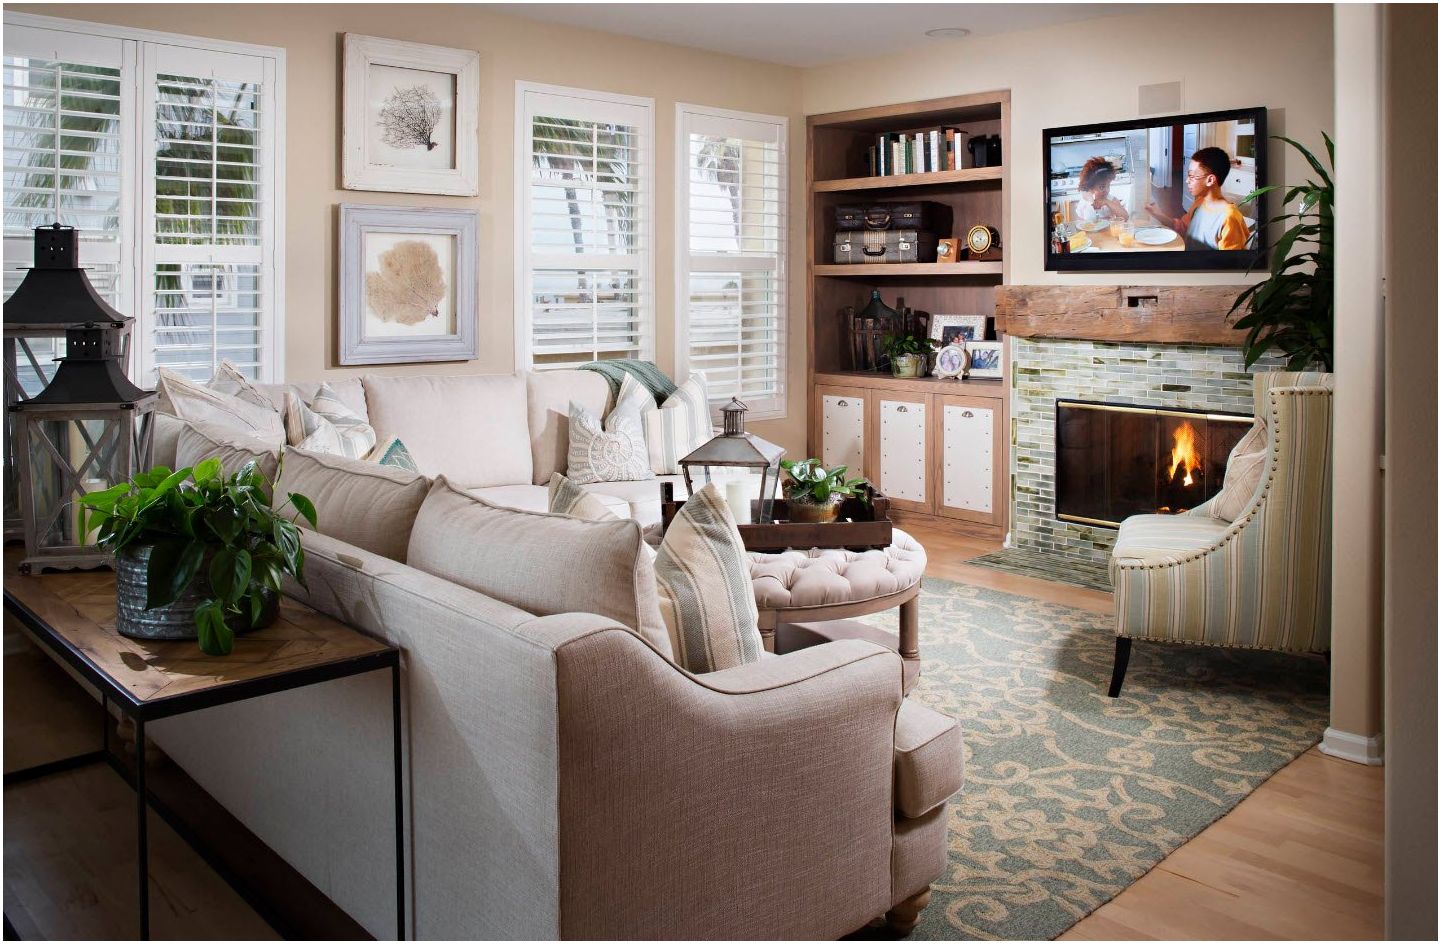 Obývací pokoj 13 m2. m: základní styly a pravidla designu pro malý obývací pokoj